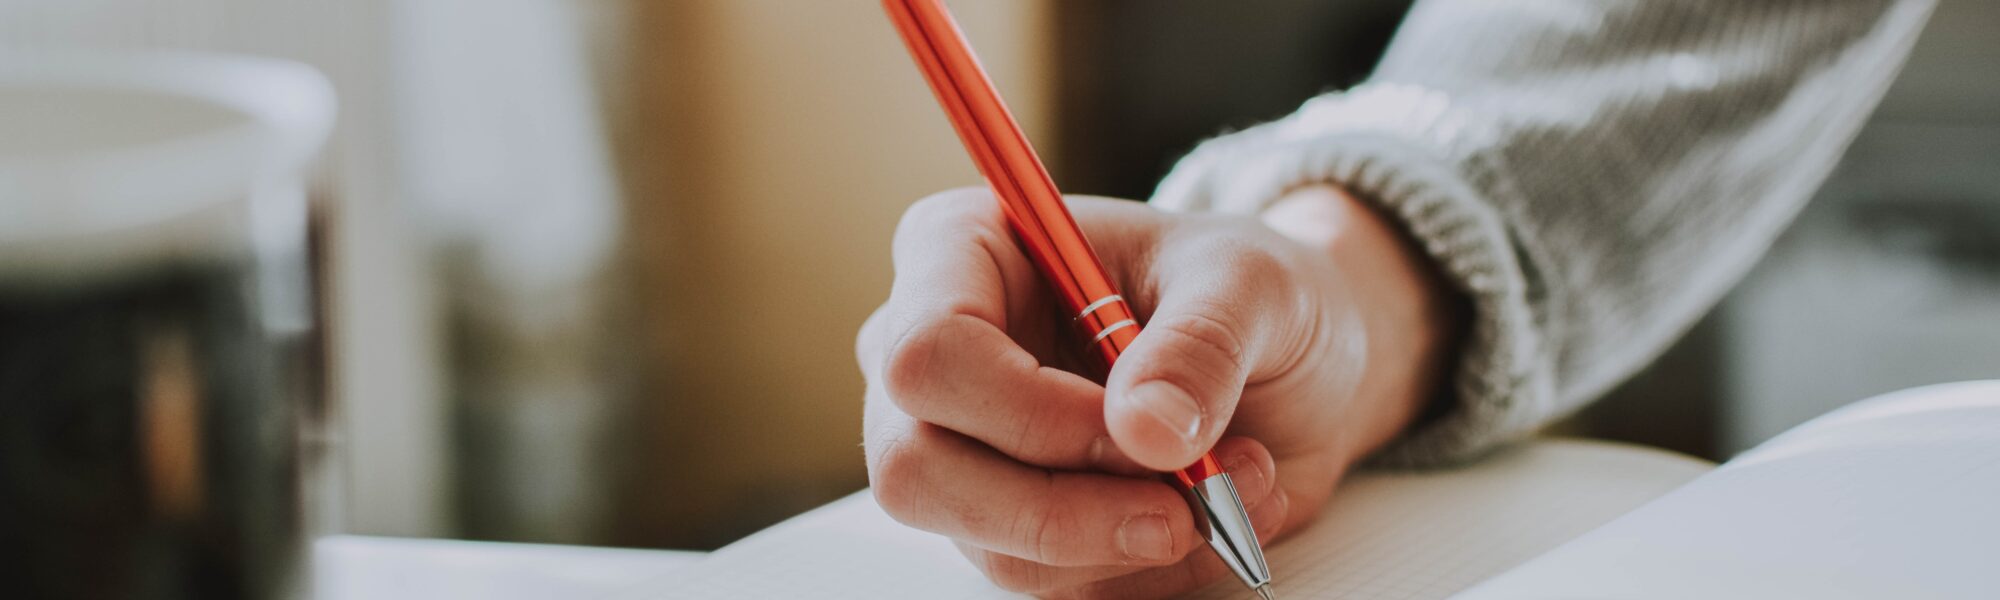 Eine Hand schreibt mit einem orangenen Stift in ein aufgeschlagenes Buch.